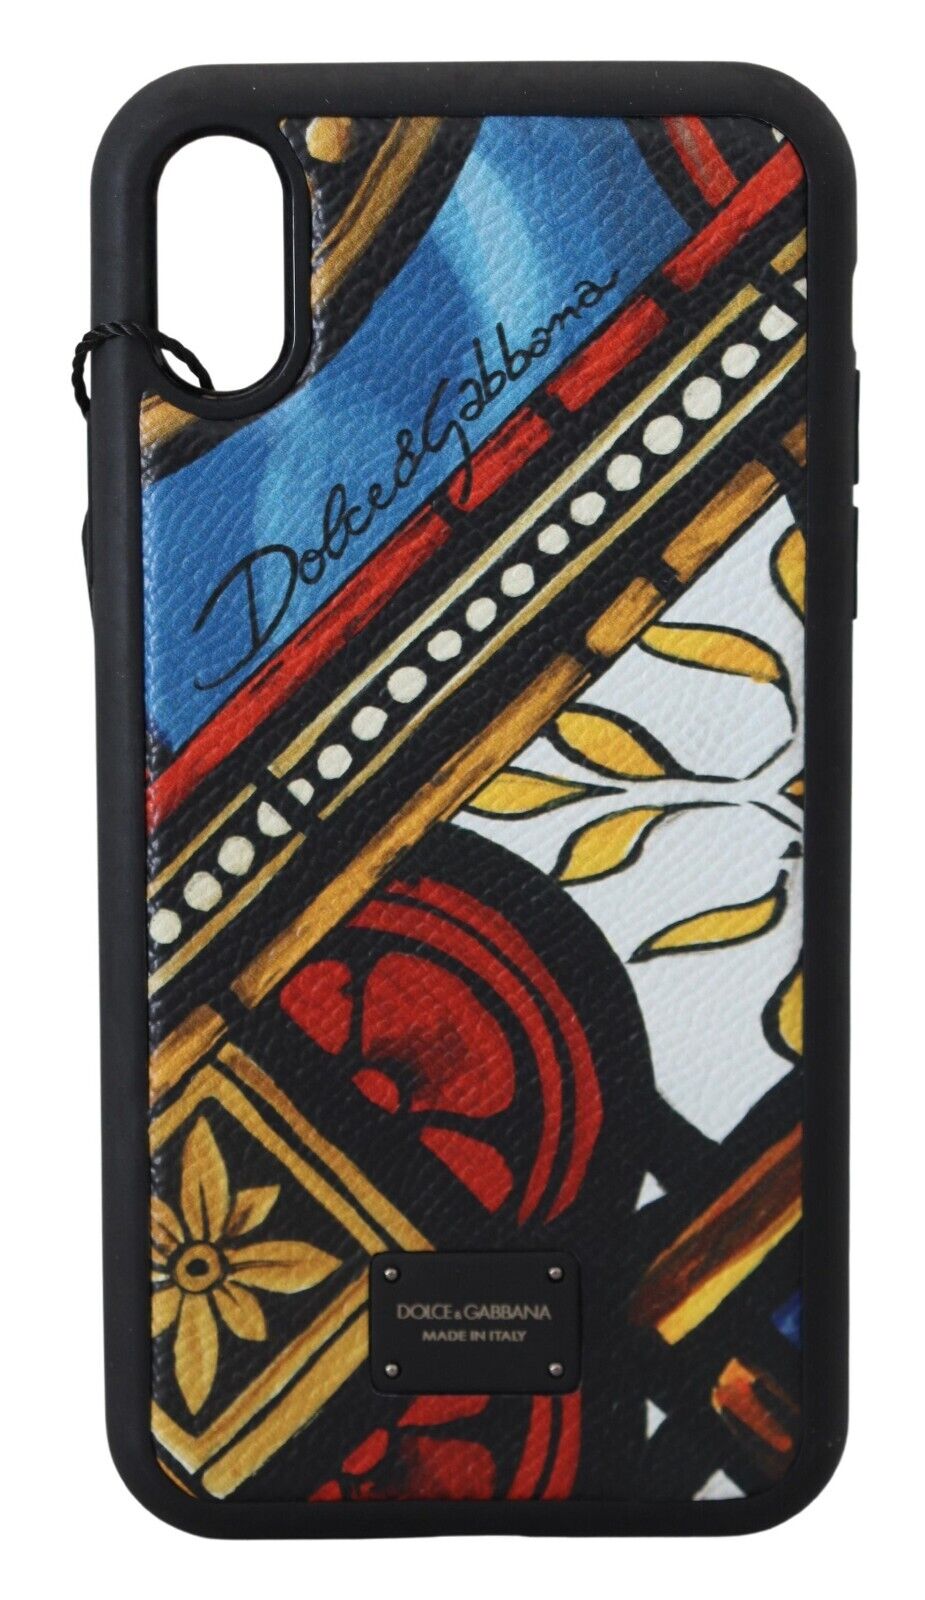 Чехол для телефона DOLCE & GABBANA, разноцветный майолика с логотипом DG для iPhone XR, рекомендованная розничная цена 220 долларов США.